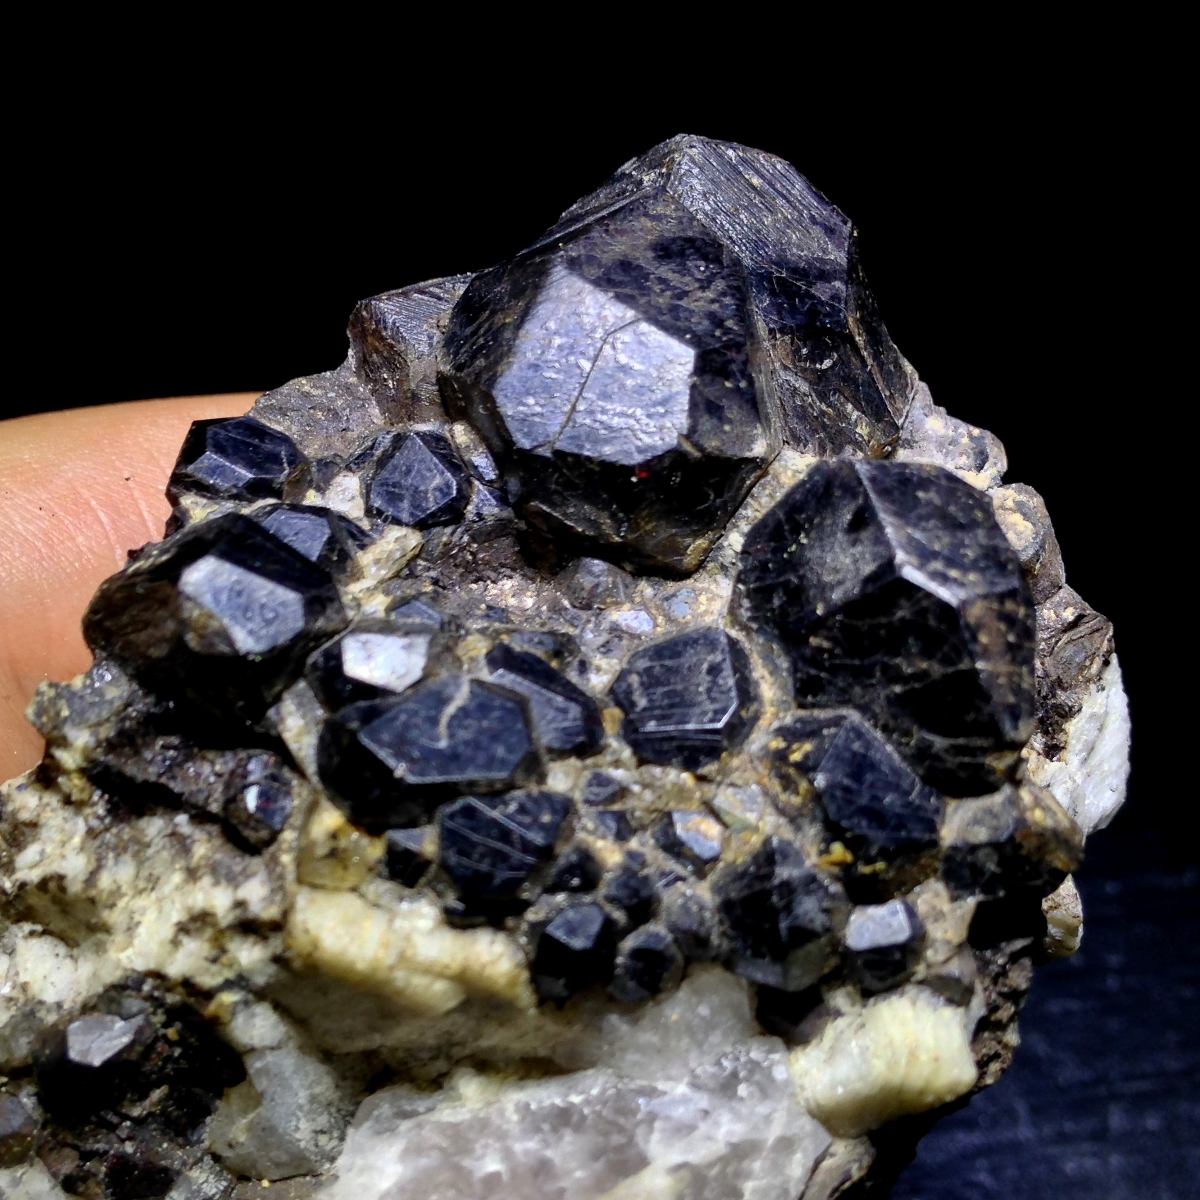 Granate Mineral De Colección 8.5x5cm - $ 500.00 en Mercado Libre